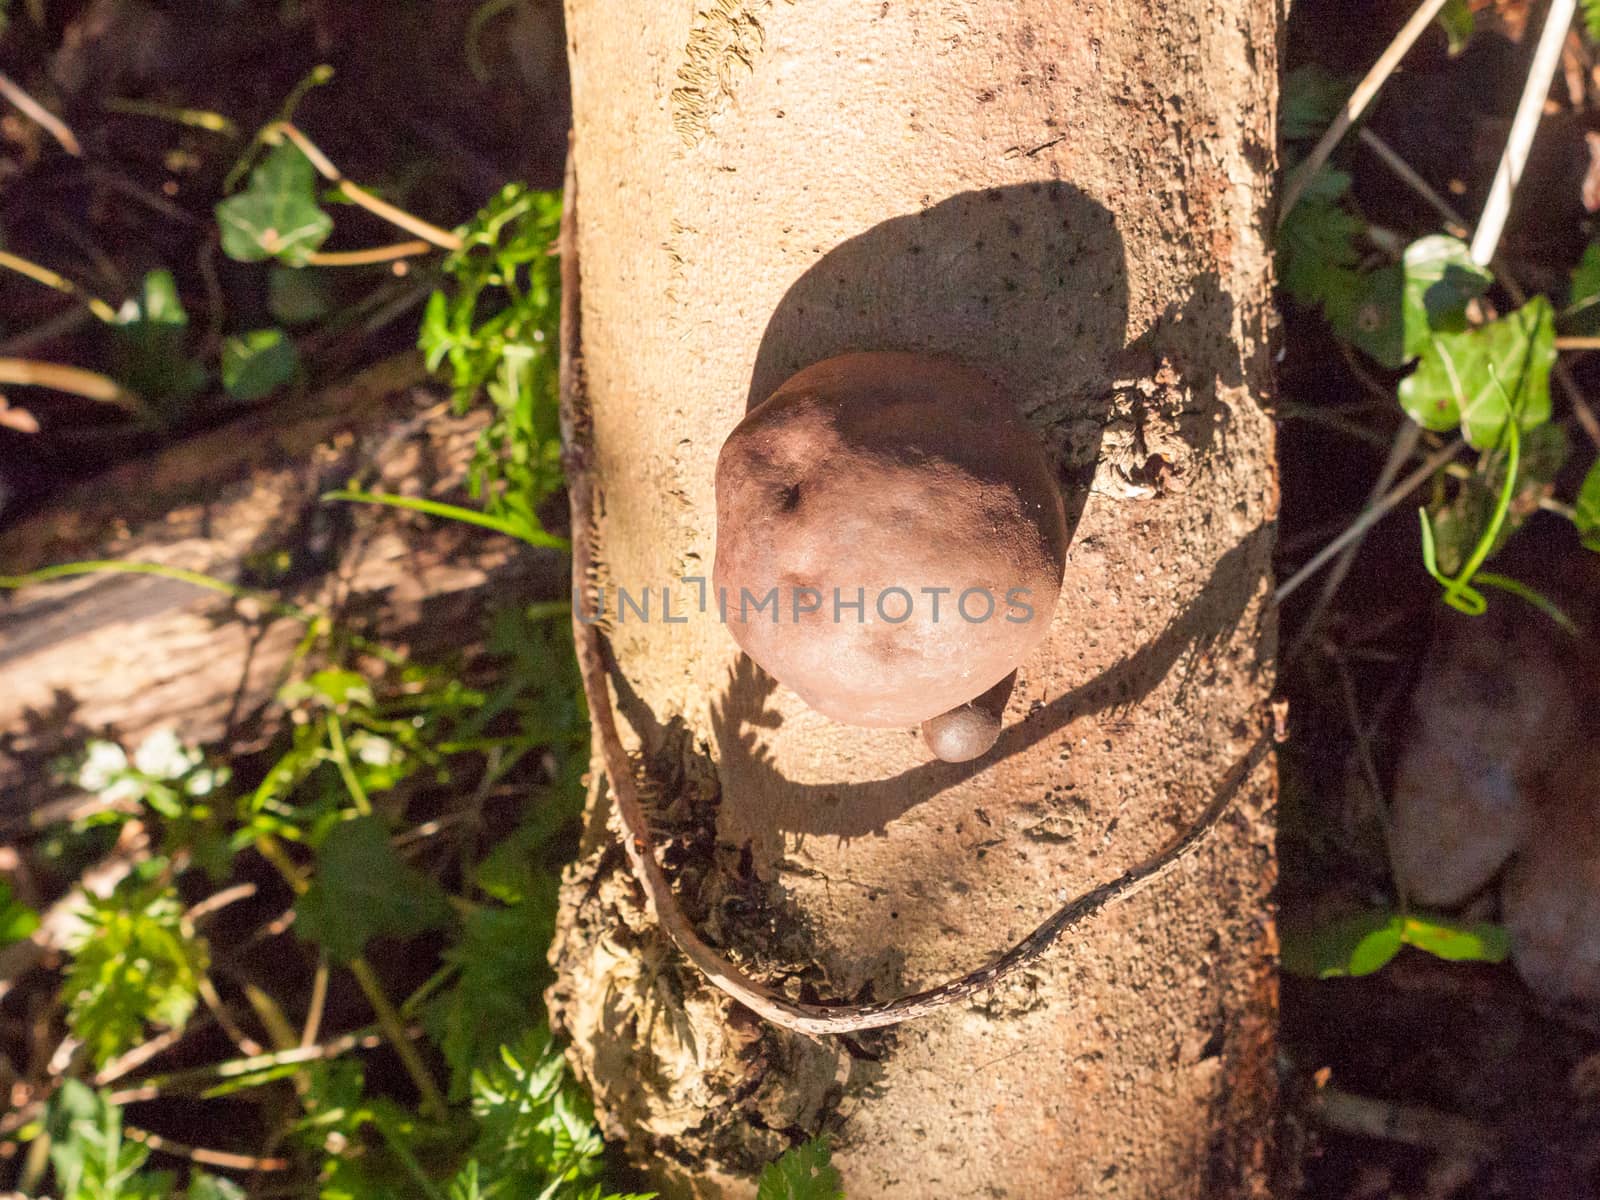 black fungi ball tree stump - Daldinia concentrica (Bolton) Ces. & De Not. - King Alfred's Cakes by callumrc